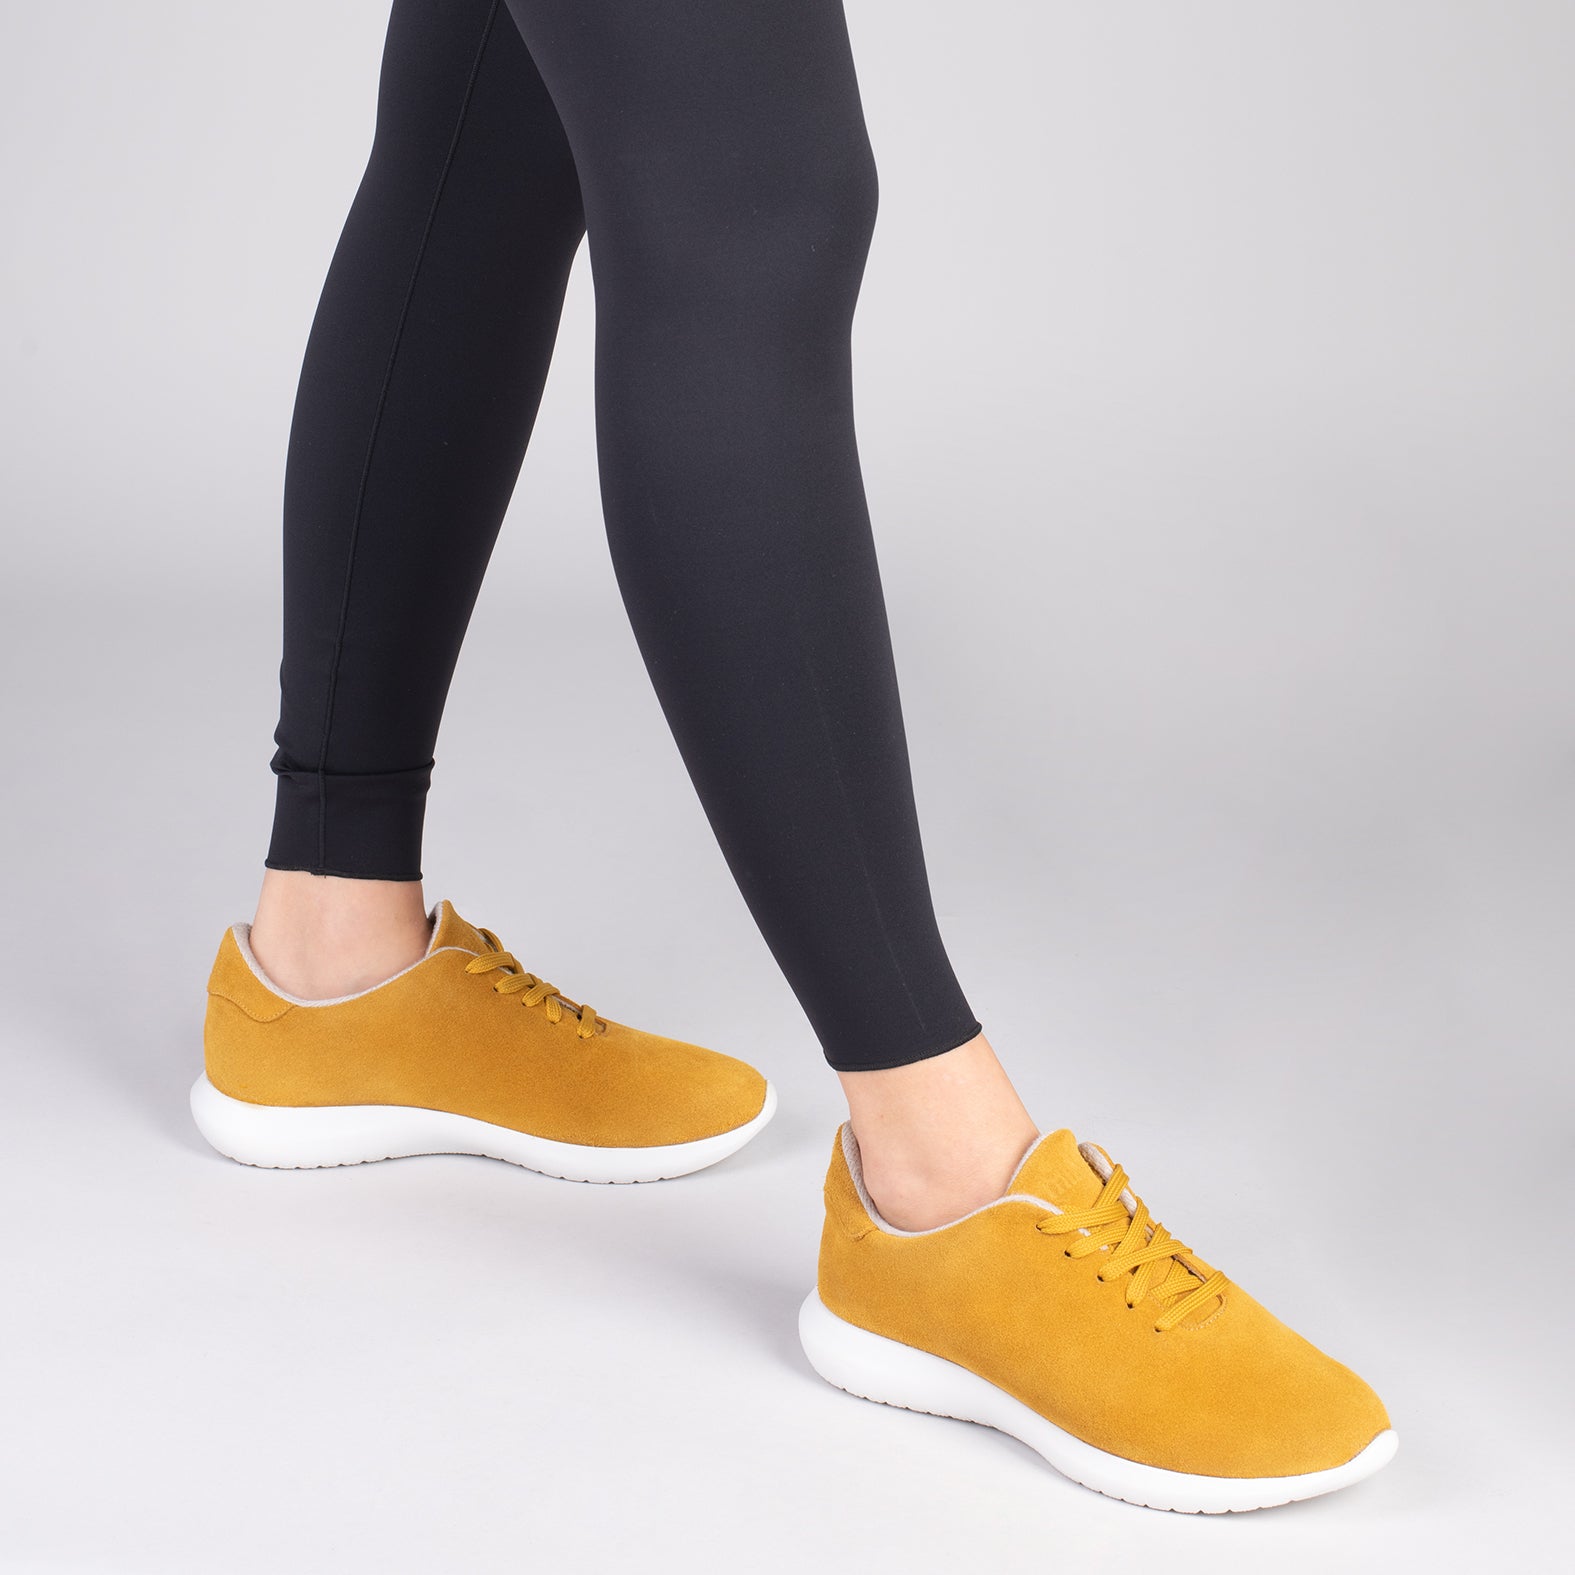 WALK – Chaussures confortables pour femme JAUNE